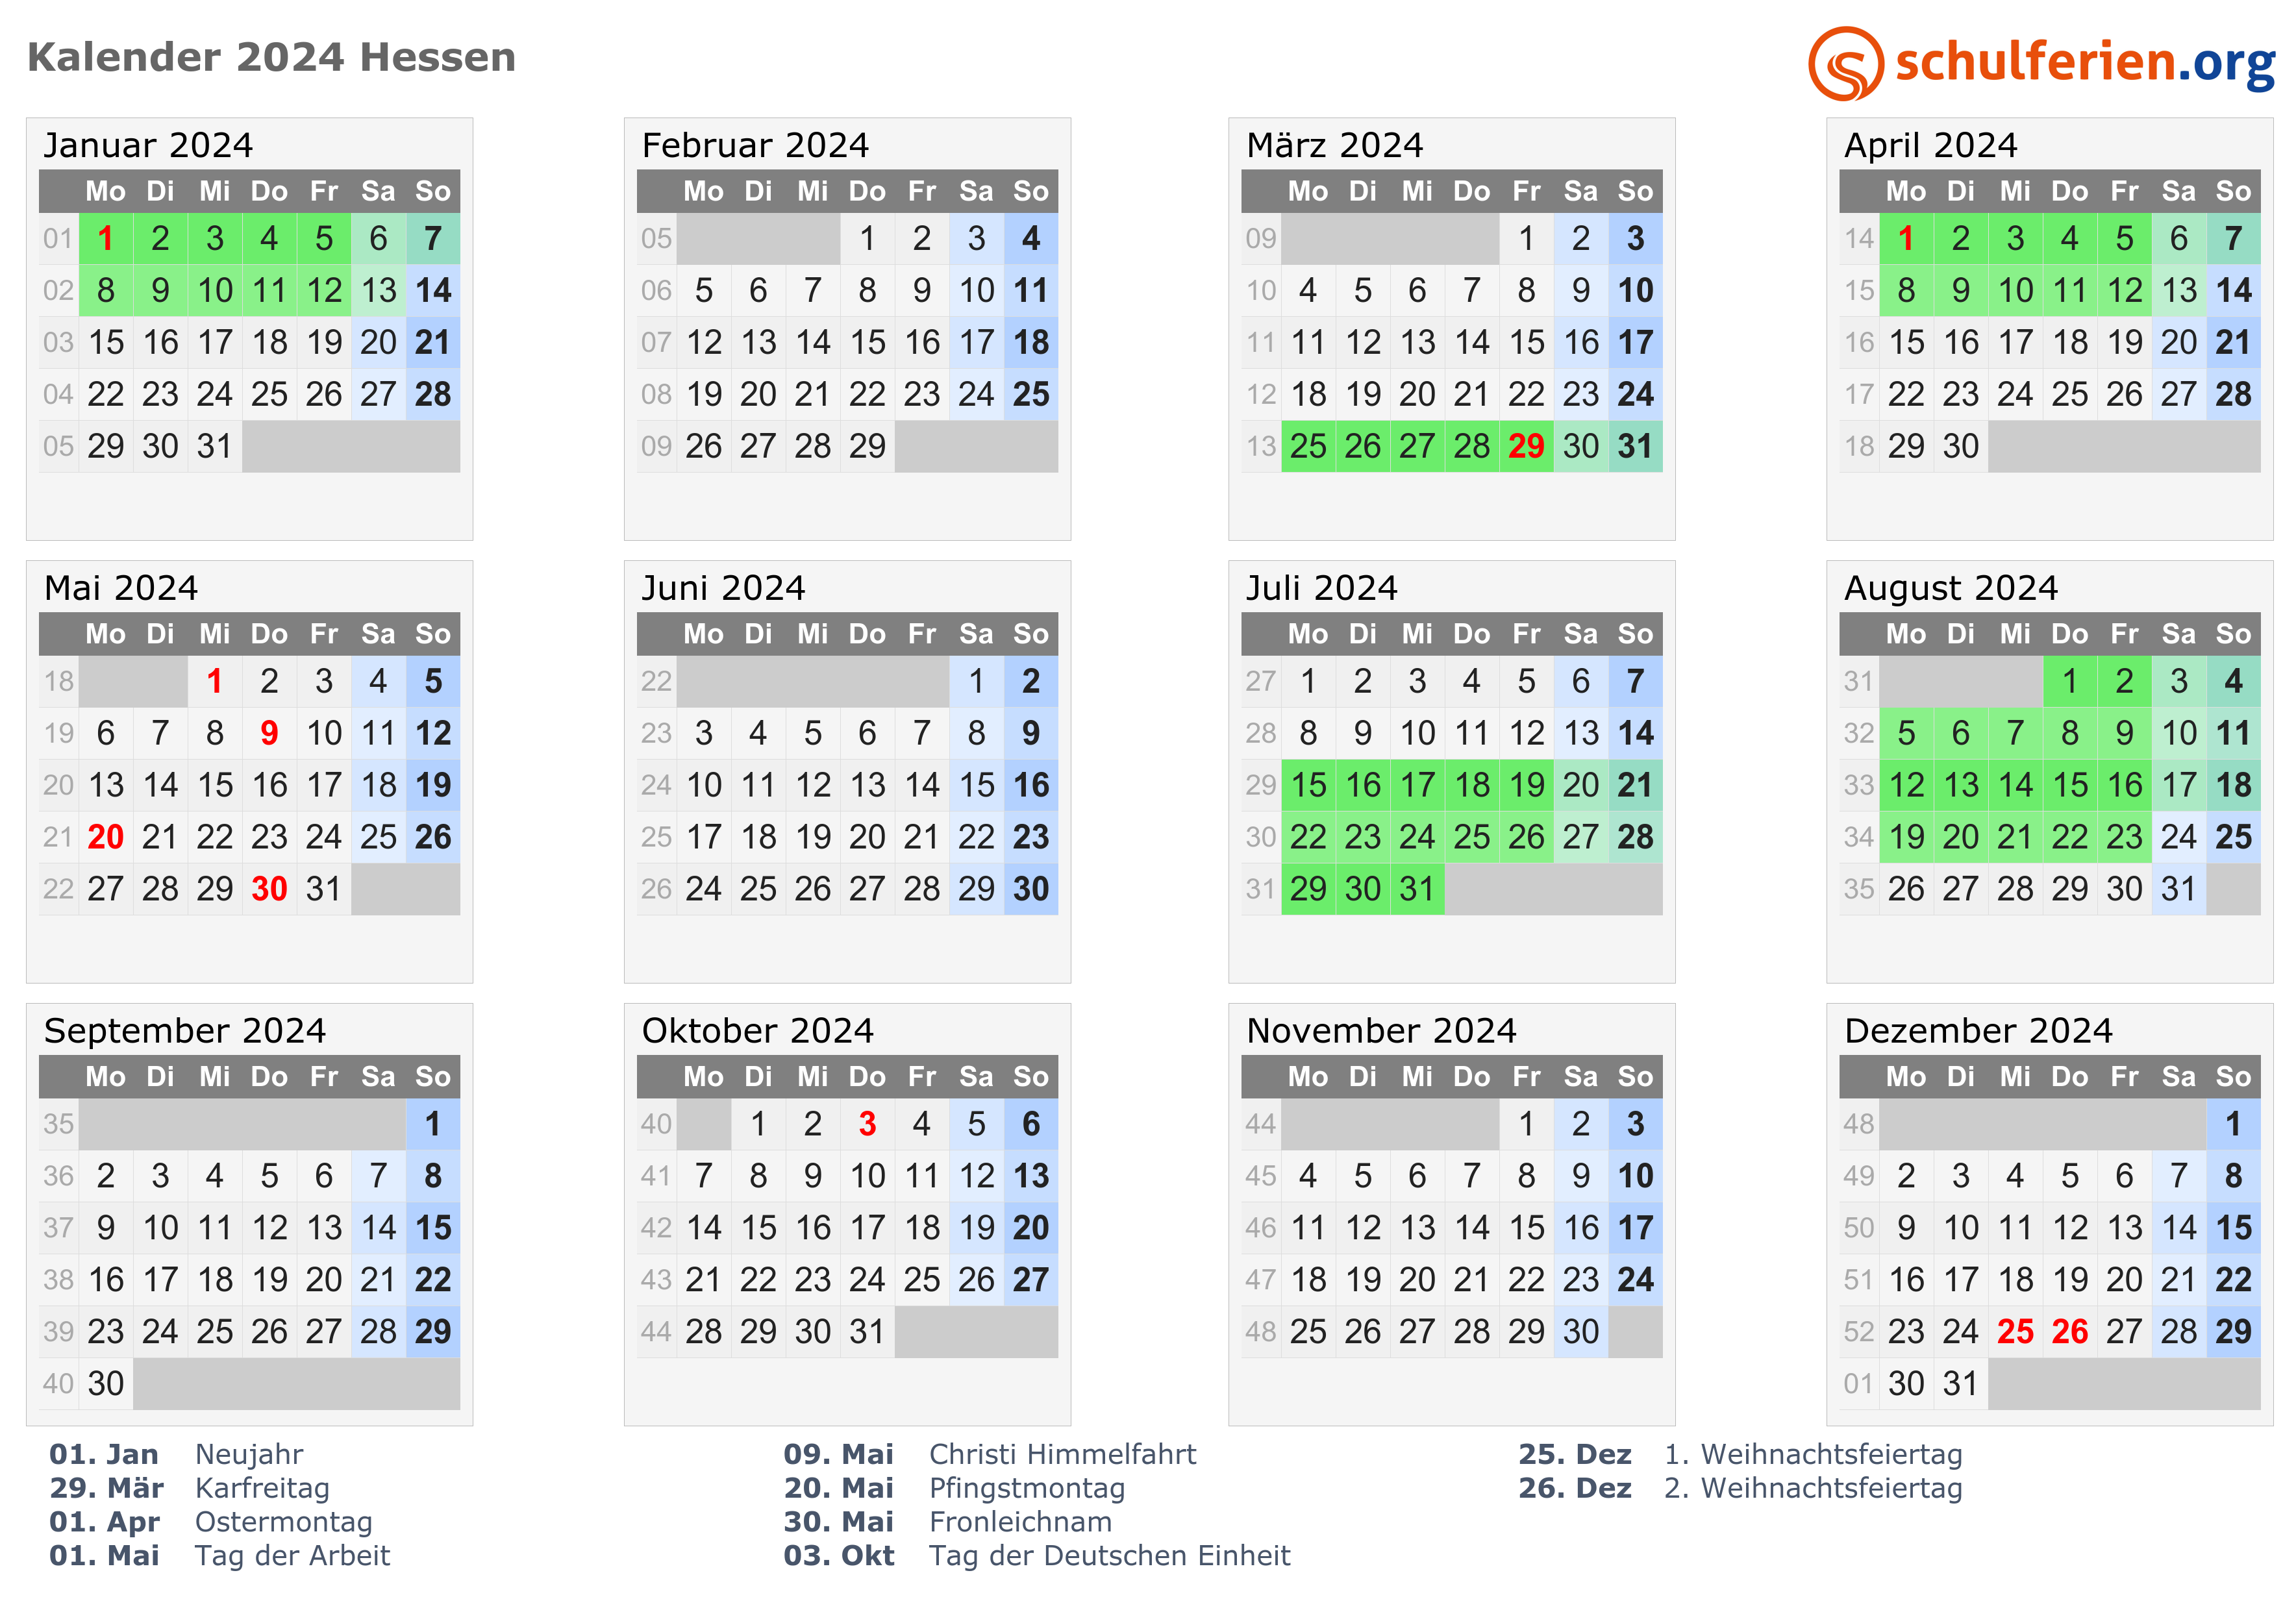 Kalender 2021 2024 Kalender for 2021 med helligdager og ukenumre